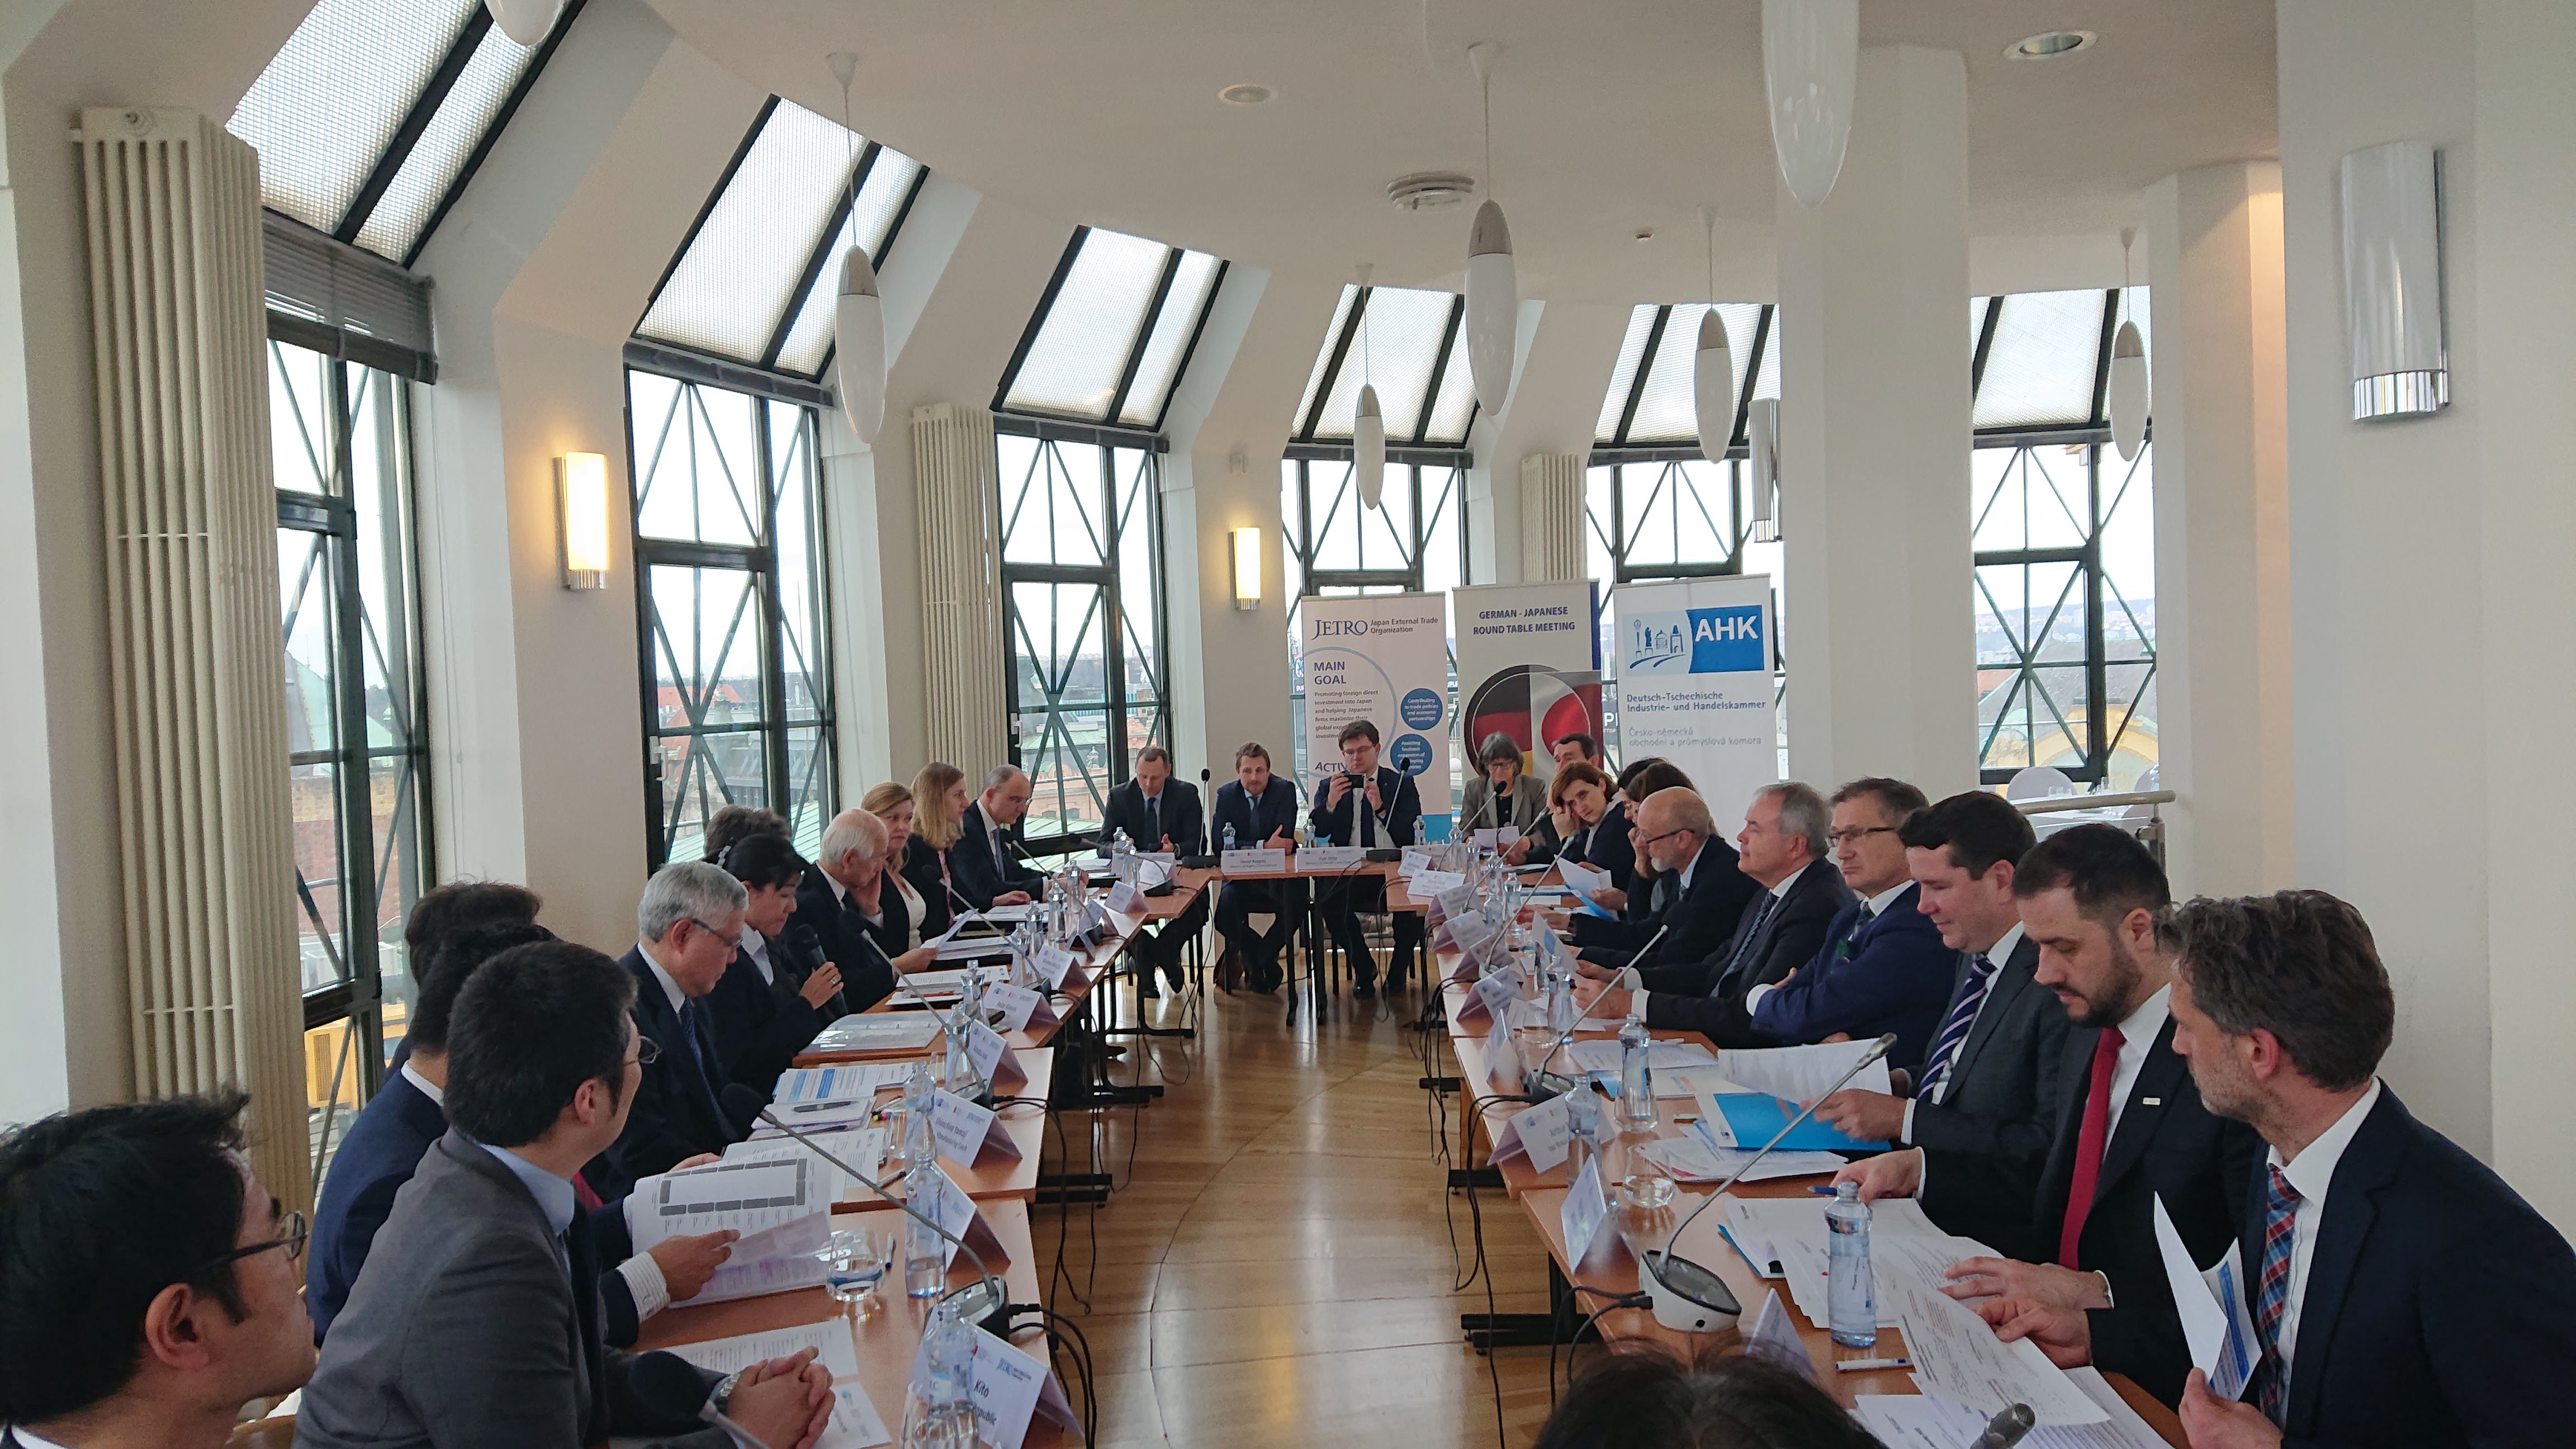 Kulatý stůl se zástupci české vlády, leden 2020